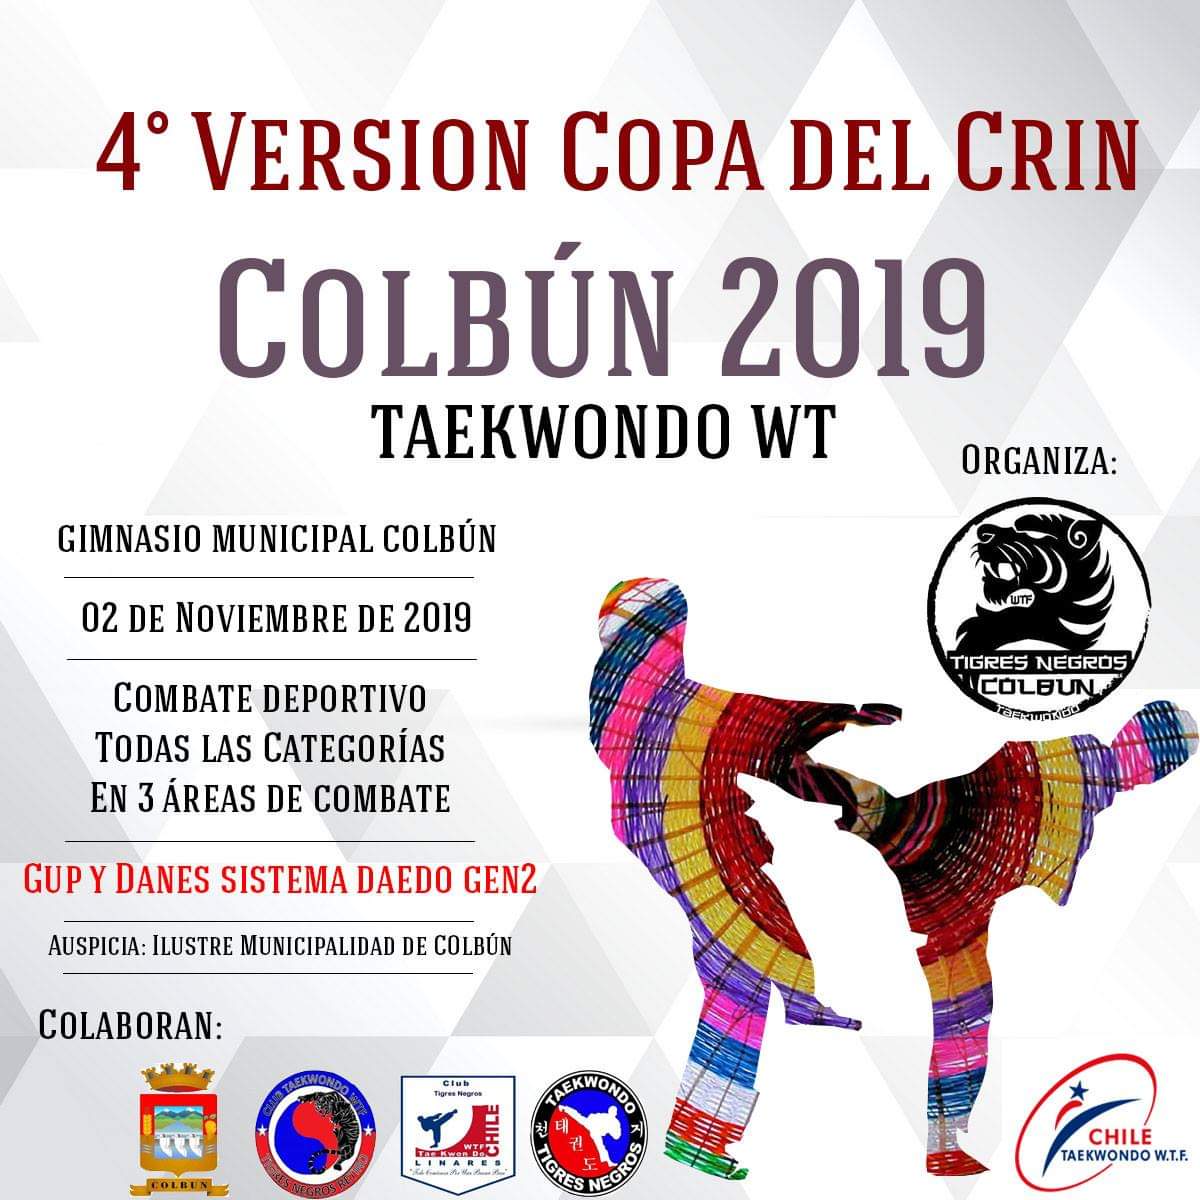 4ª VersiÓN Copa Del Crin Colbún 2019